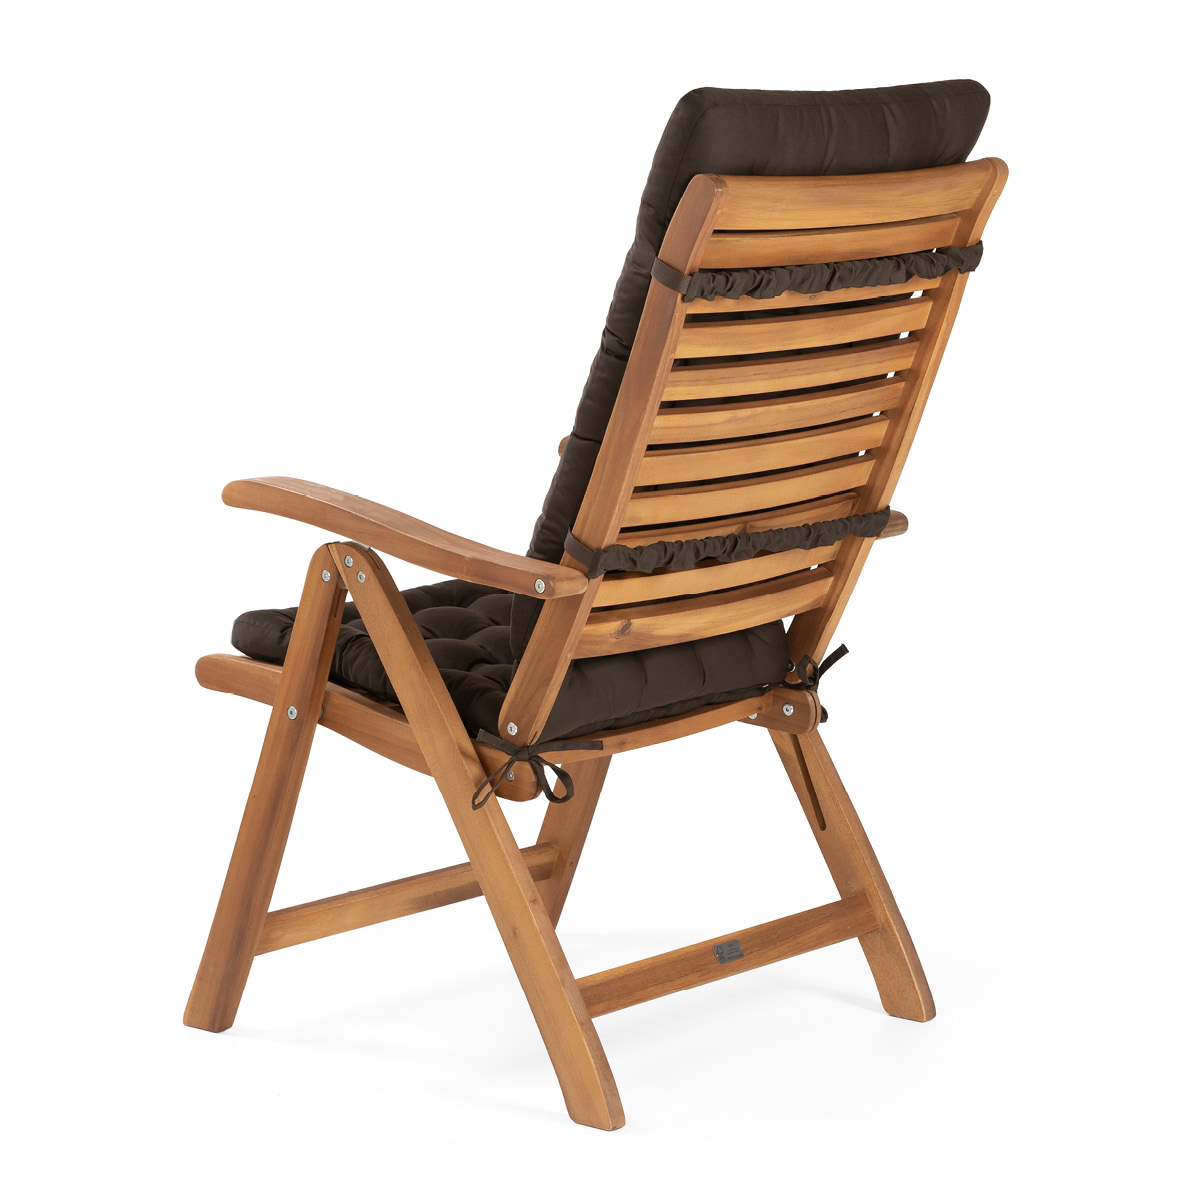 HAVE A SEAT Living Sitzkissen mit Rückenteil braun für Gartenstuhl | dicke Polsterung mit Schleifen und Bänder zur Befestigung an Rückenlehne